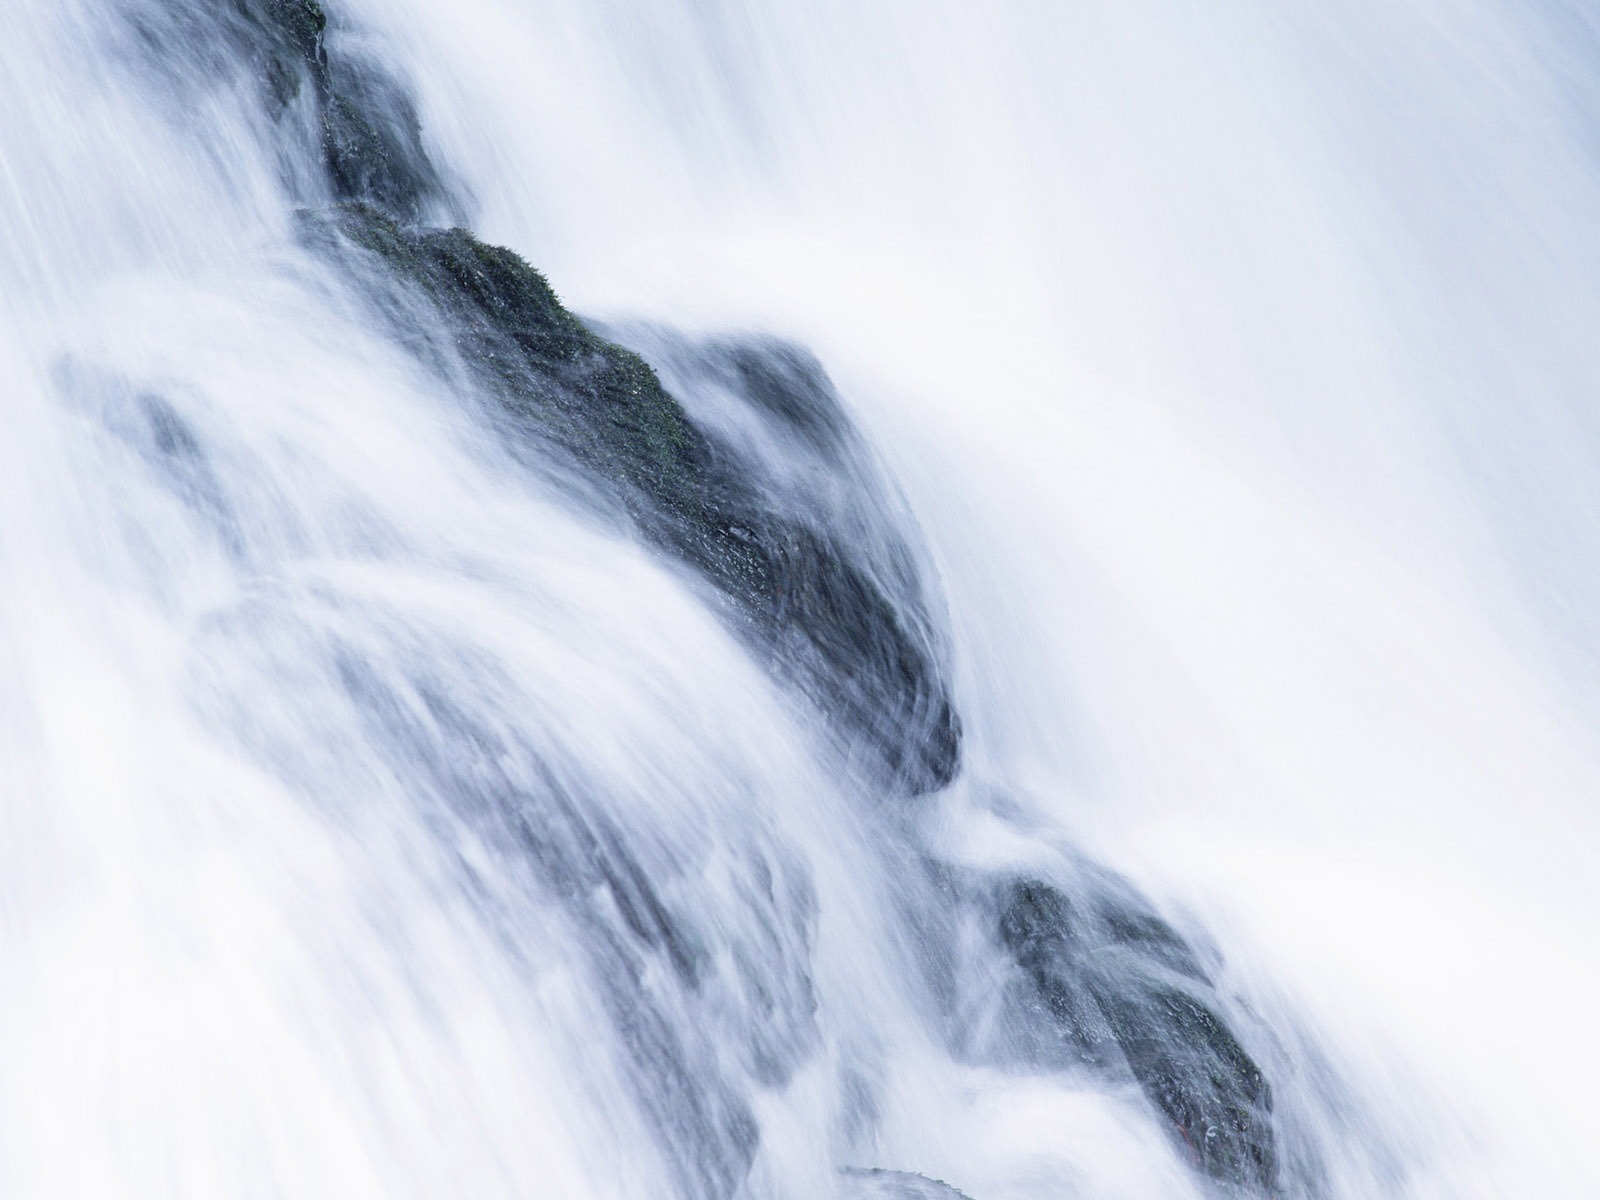 Waterfall flux HD Wallpapers #32 - 1600x1200